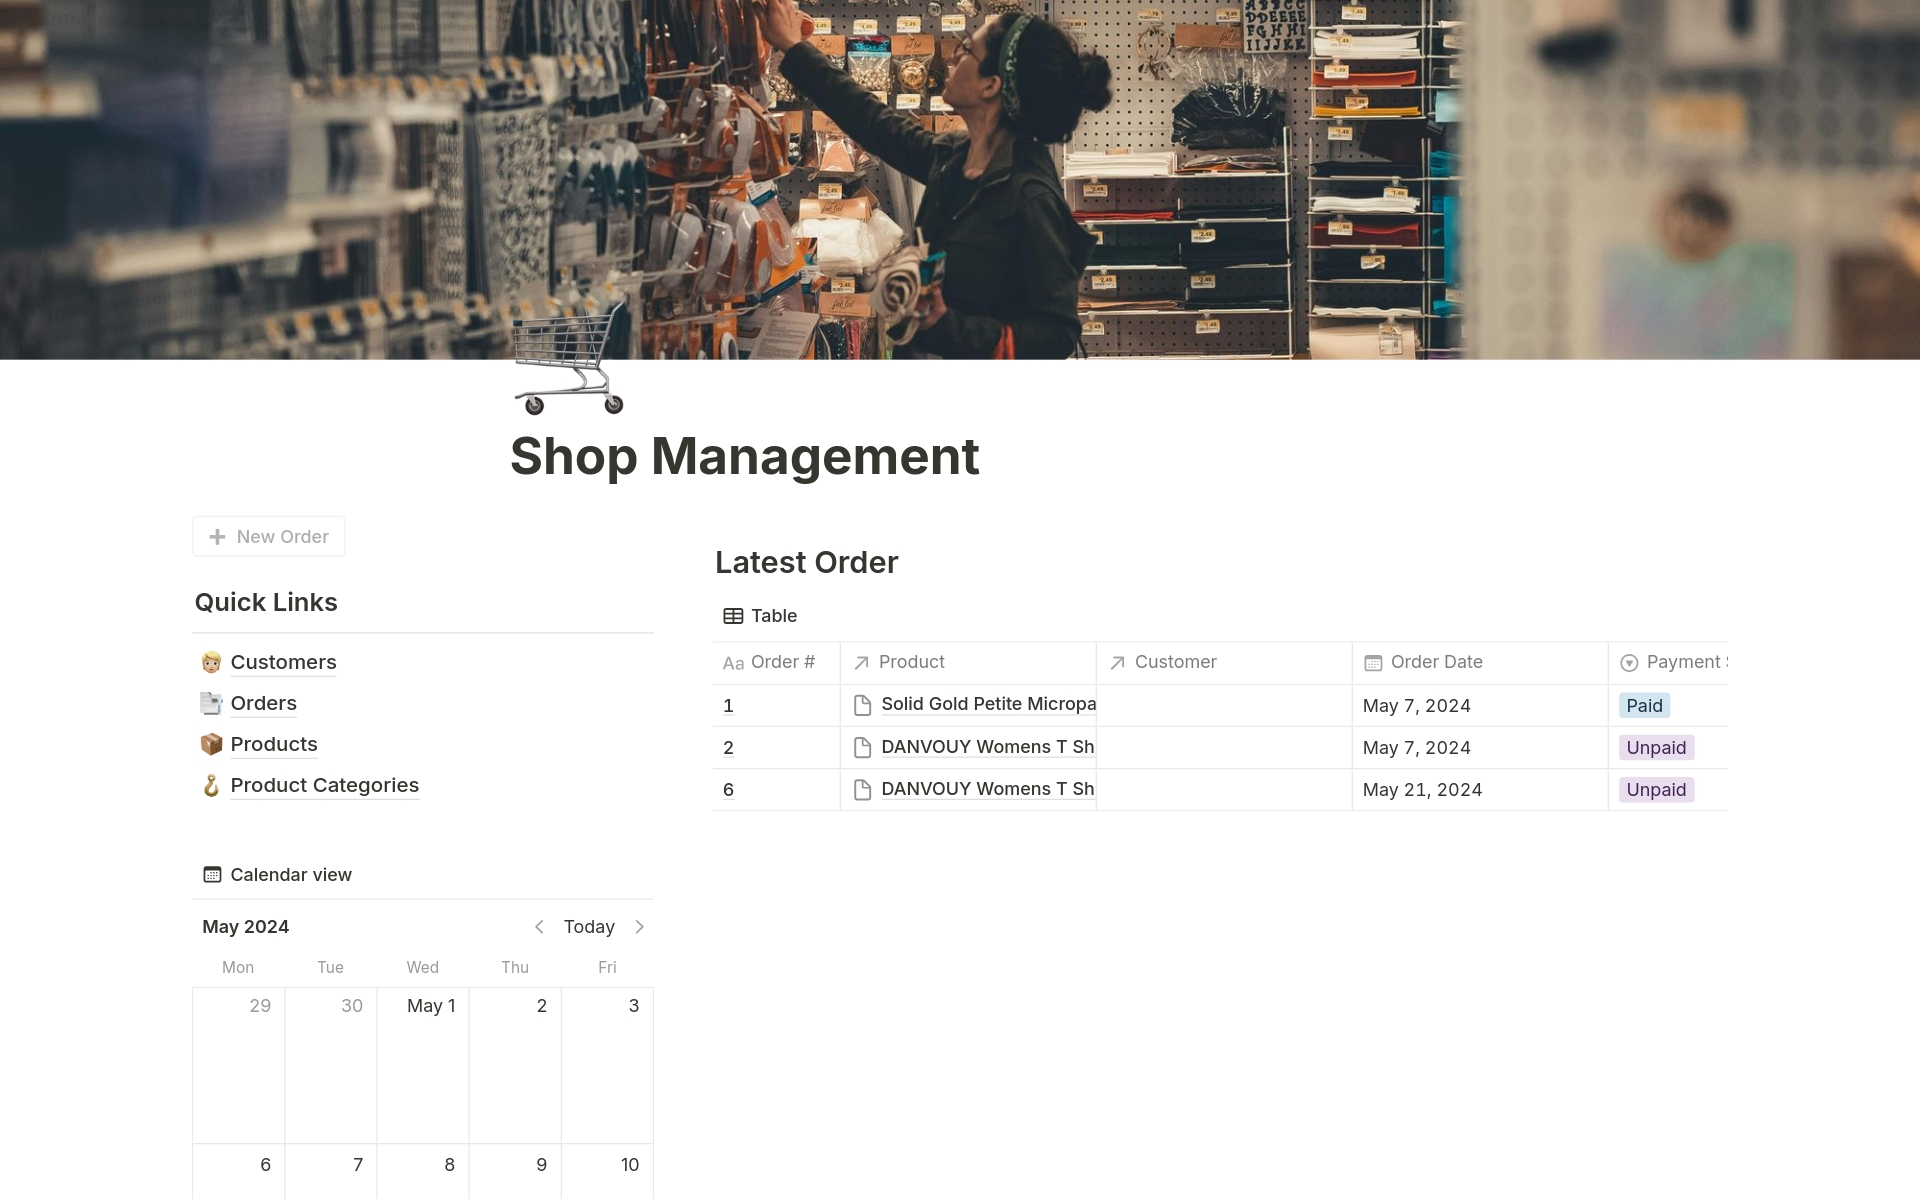 Uma prévia do modelo para Shop Management